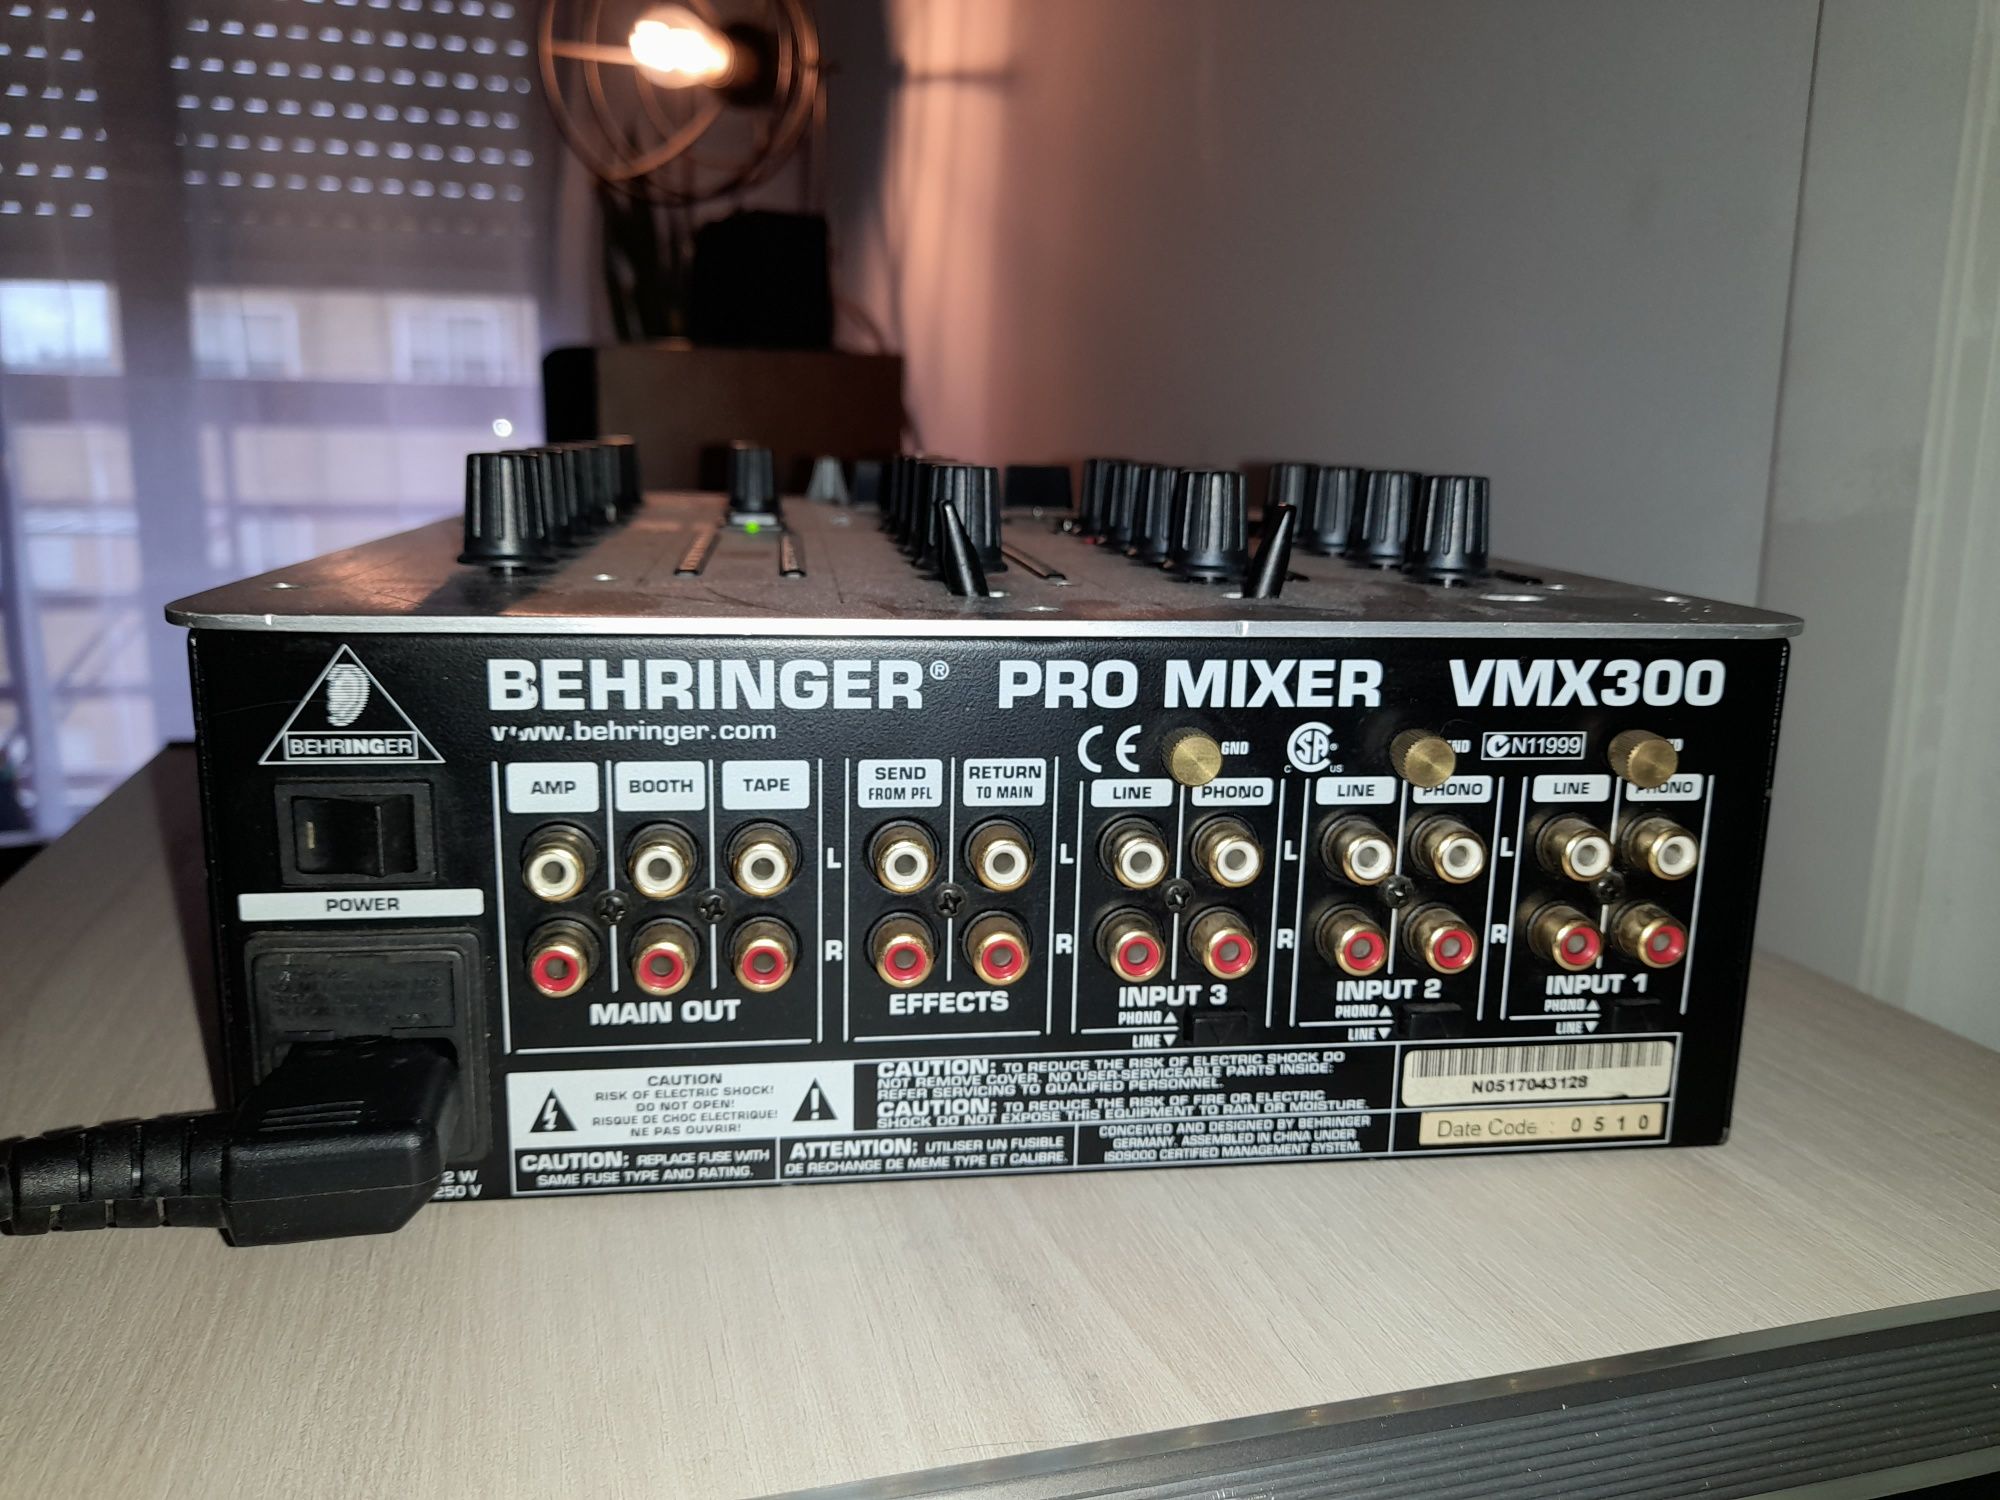 BEHRINGER pro mixer vmx300